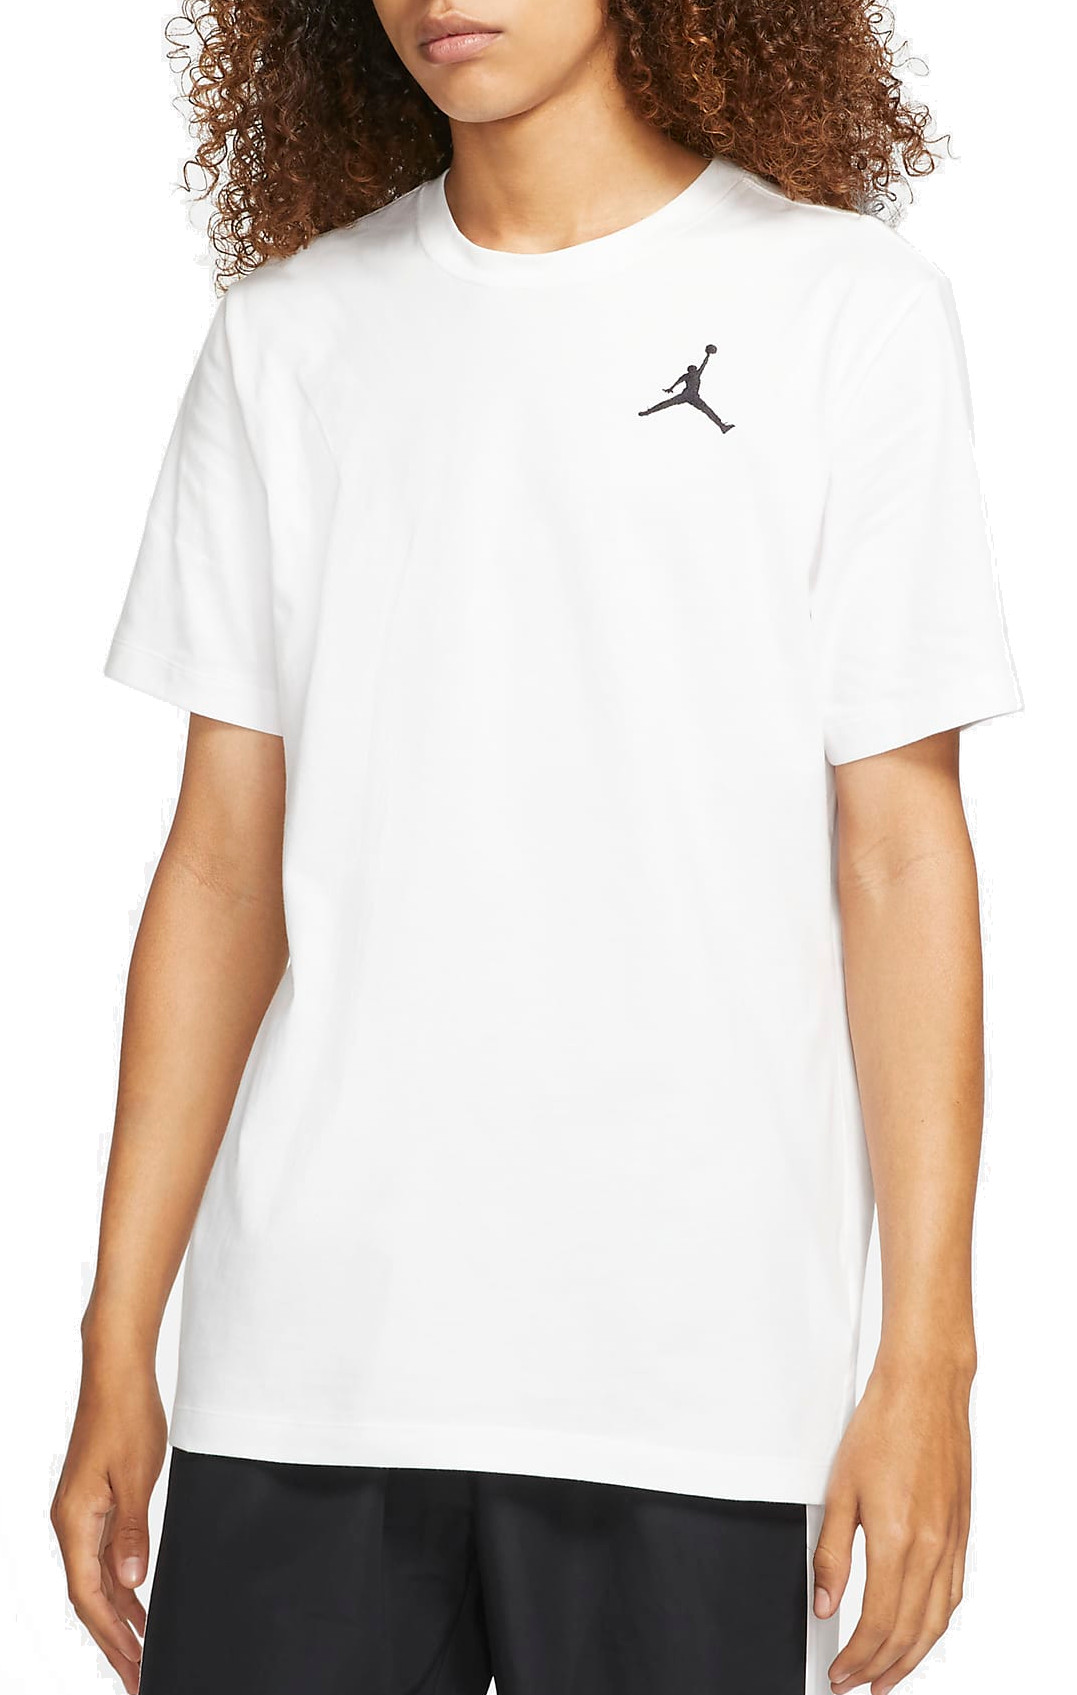 Camiseta Jordan Jumpman Men s Short-Sleeve T-Shirt